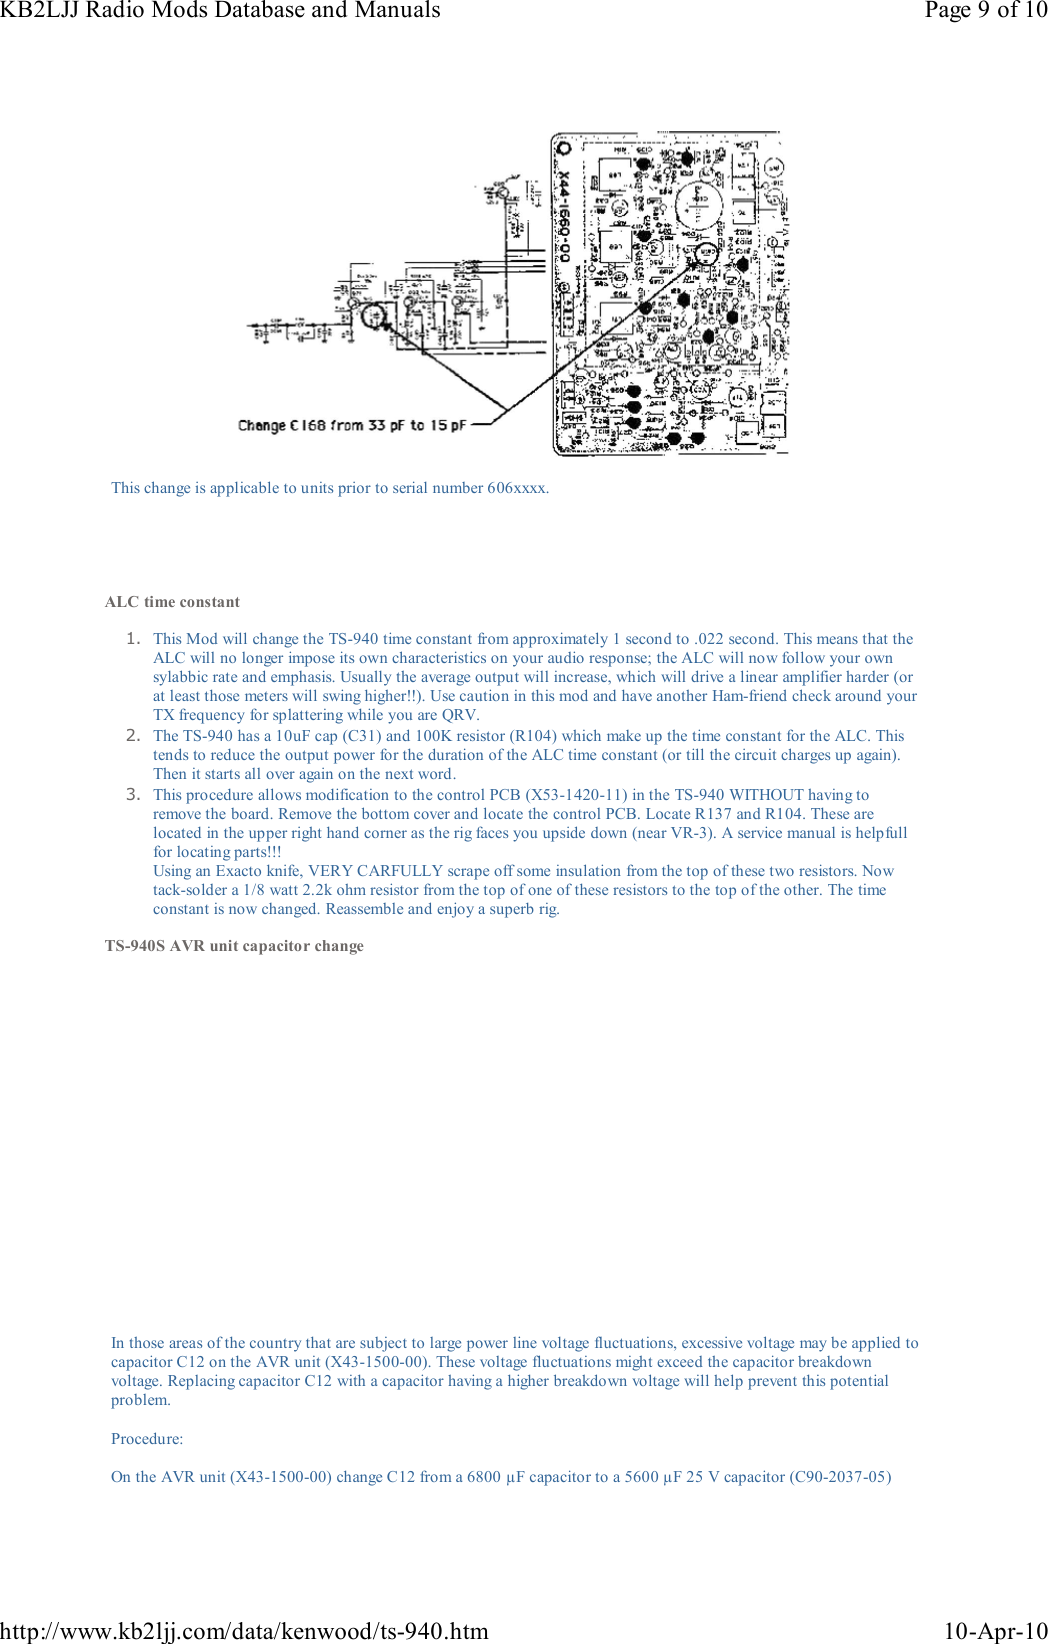 Page 9 of 10 - KENWOOD--TS-940S-MODIFS